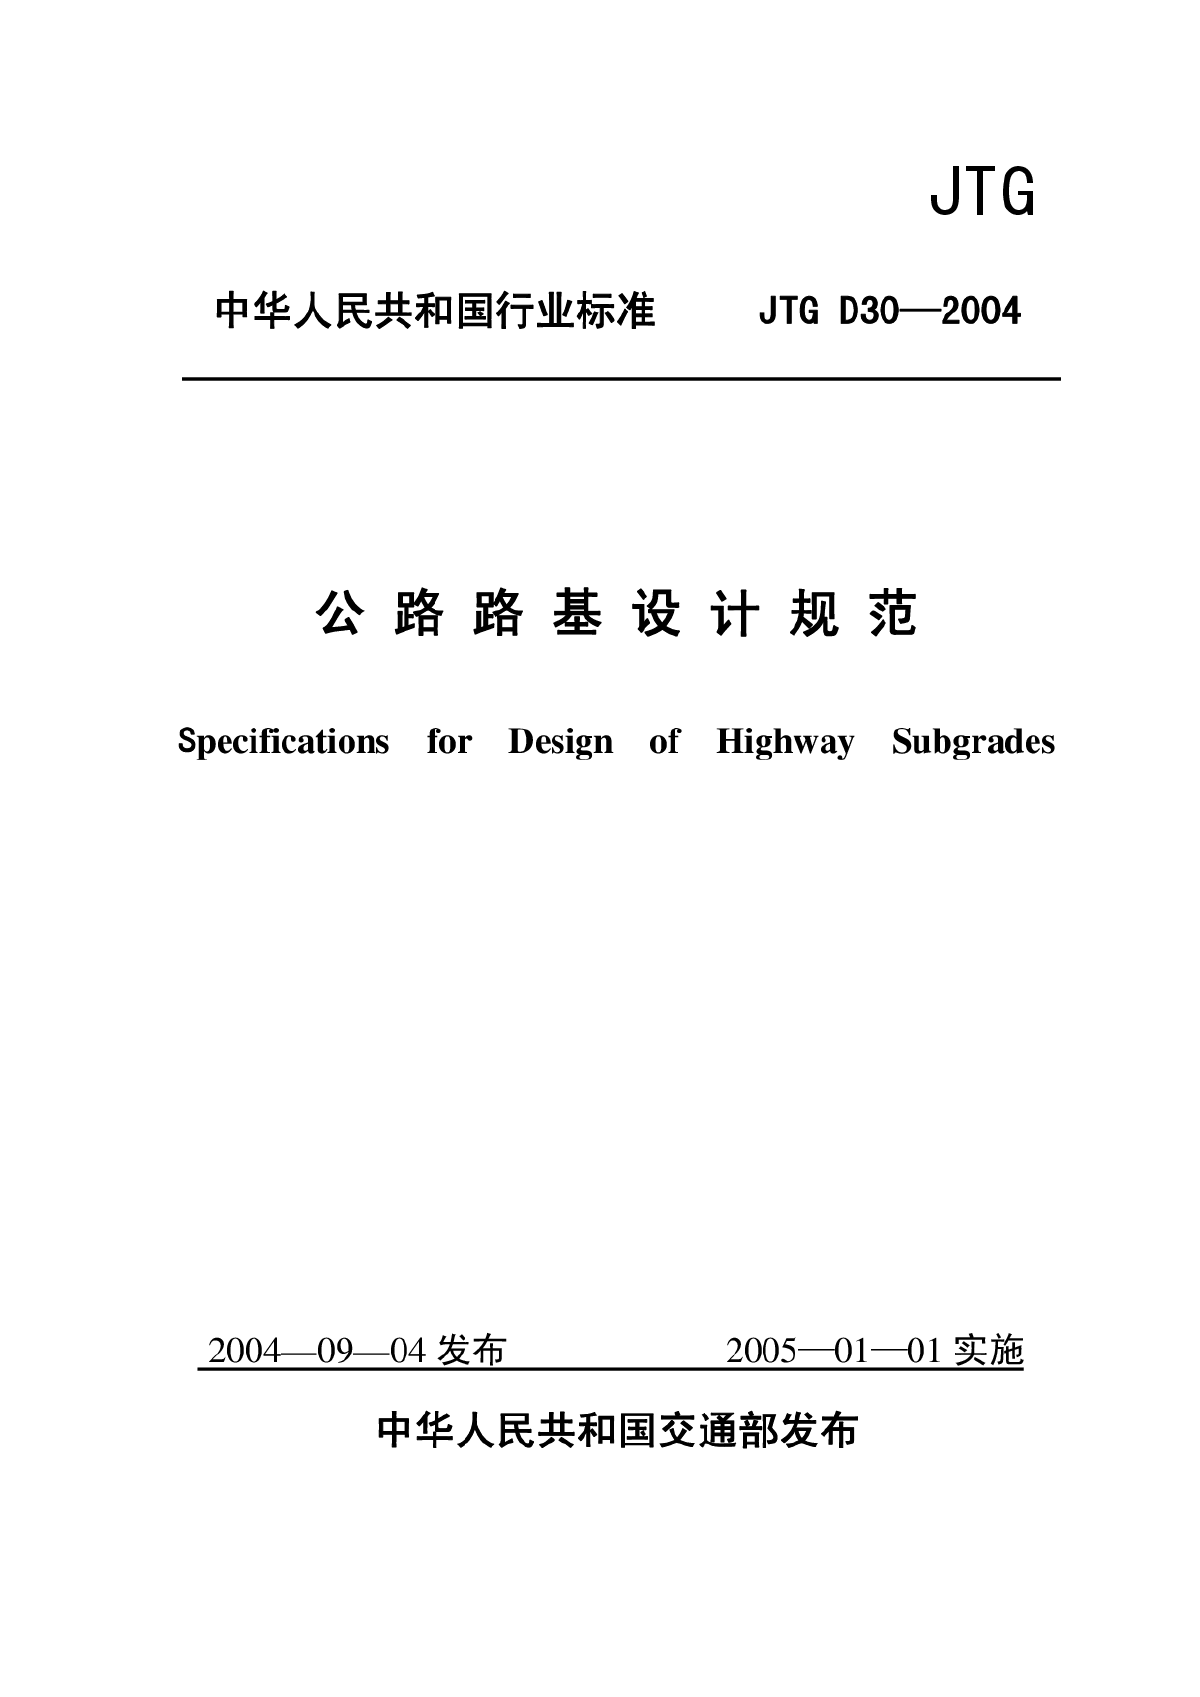 公路路基设计规范(JTG_D30—2004)